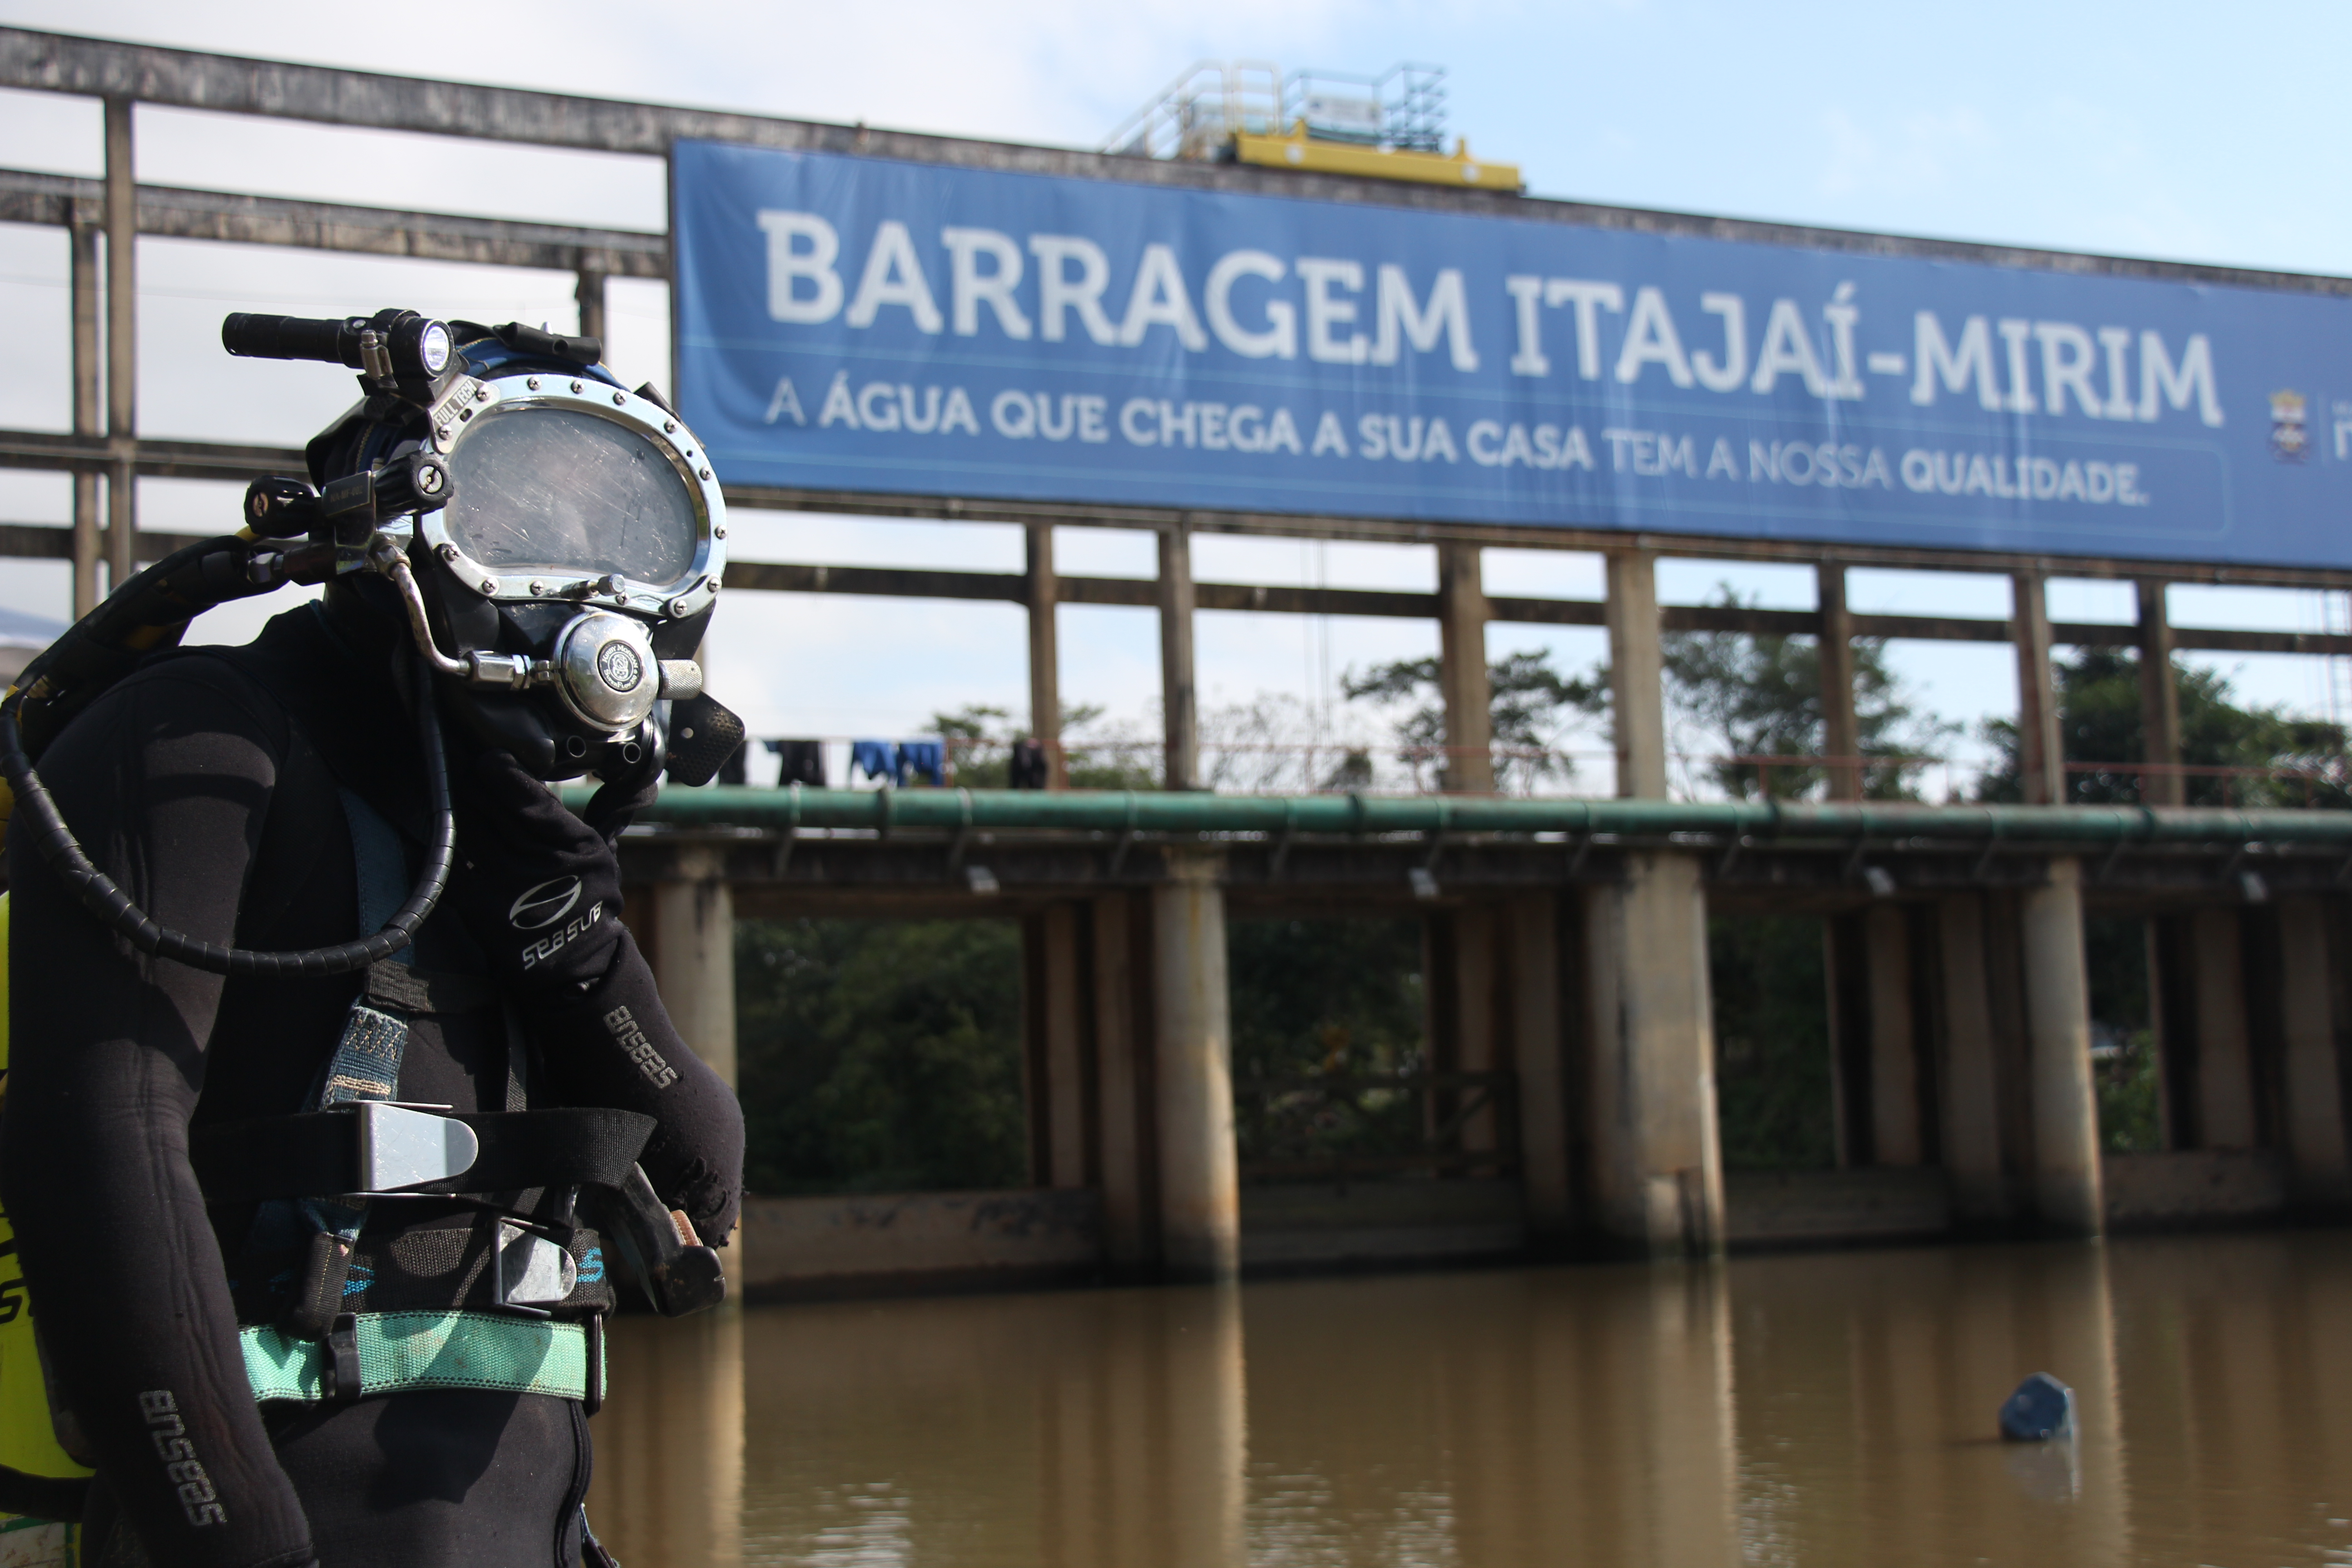 Recuperação de barragem no Itajaí-mirim utiliza serviço de mergulhadores